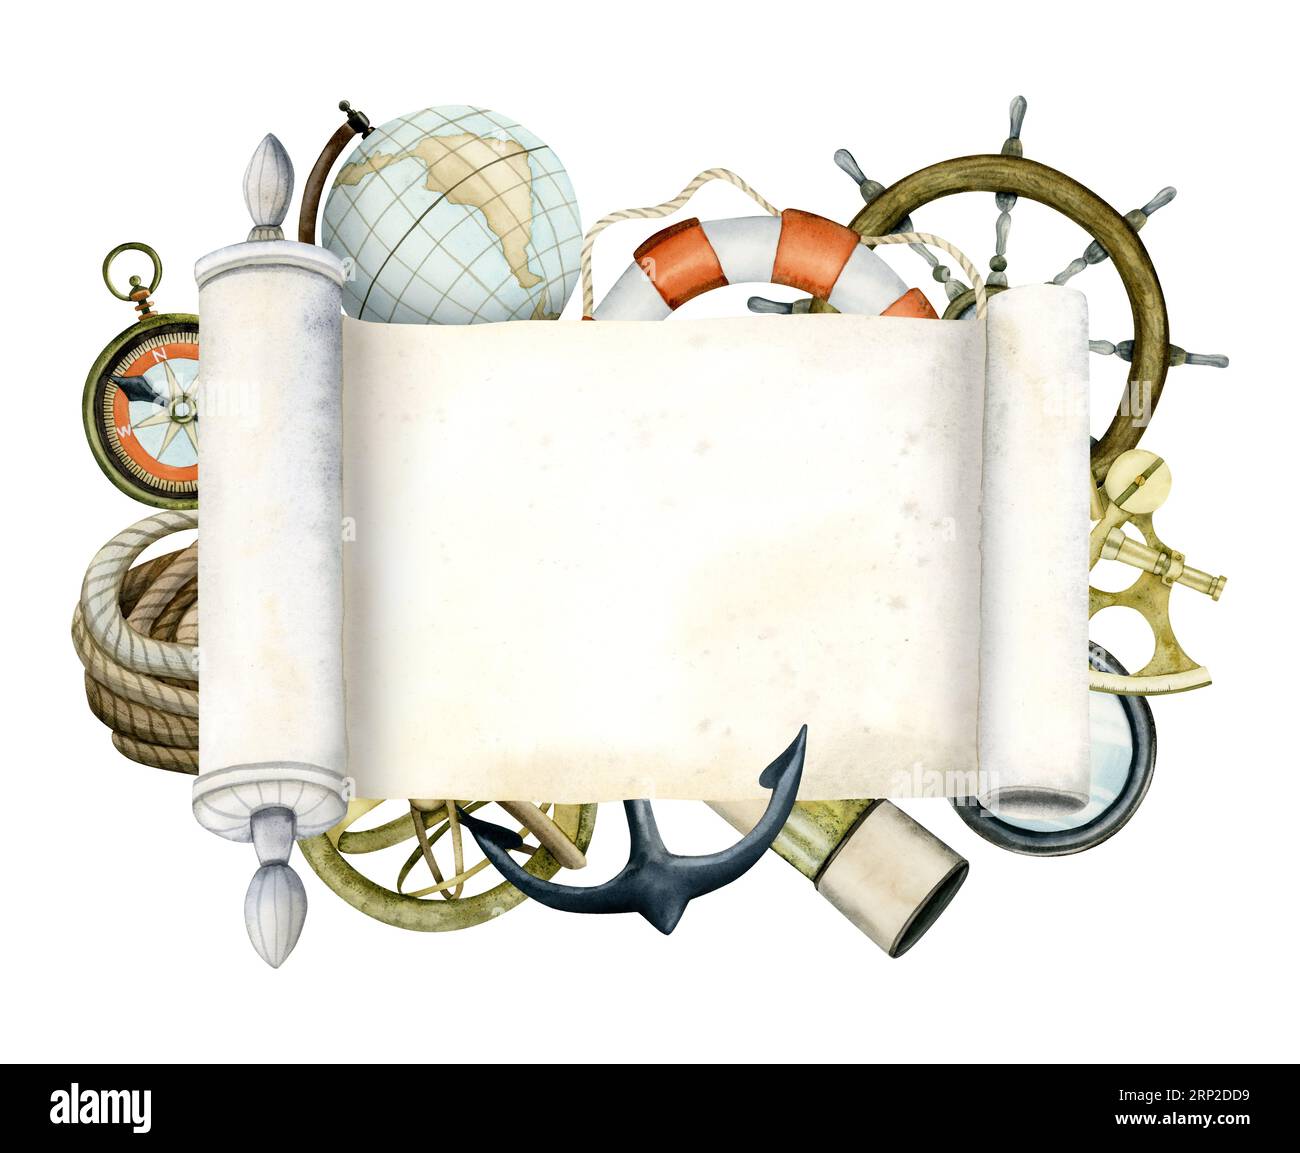 Strumenti di viaggio, navigazione e navigazione con illustrazione nautica ad acquerello a scorrimento cartaceo con vetro spia, bussola Foto Stock